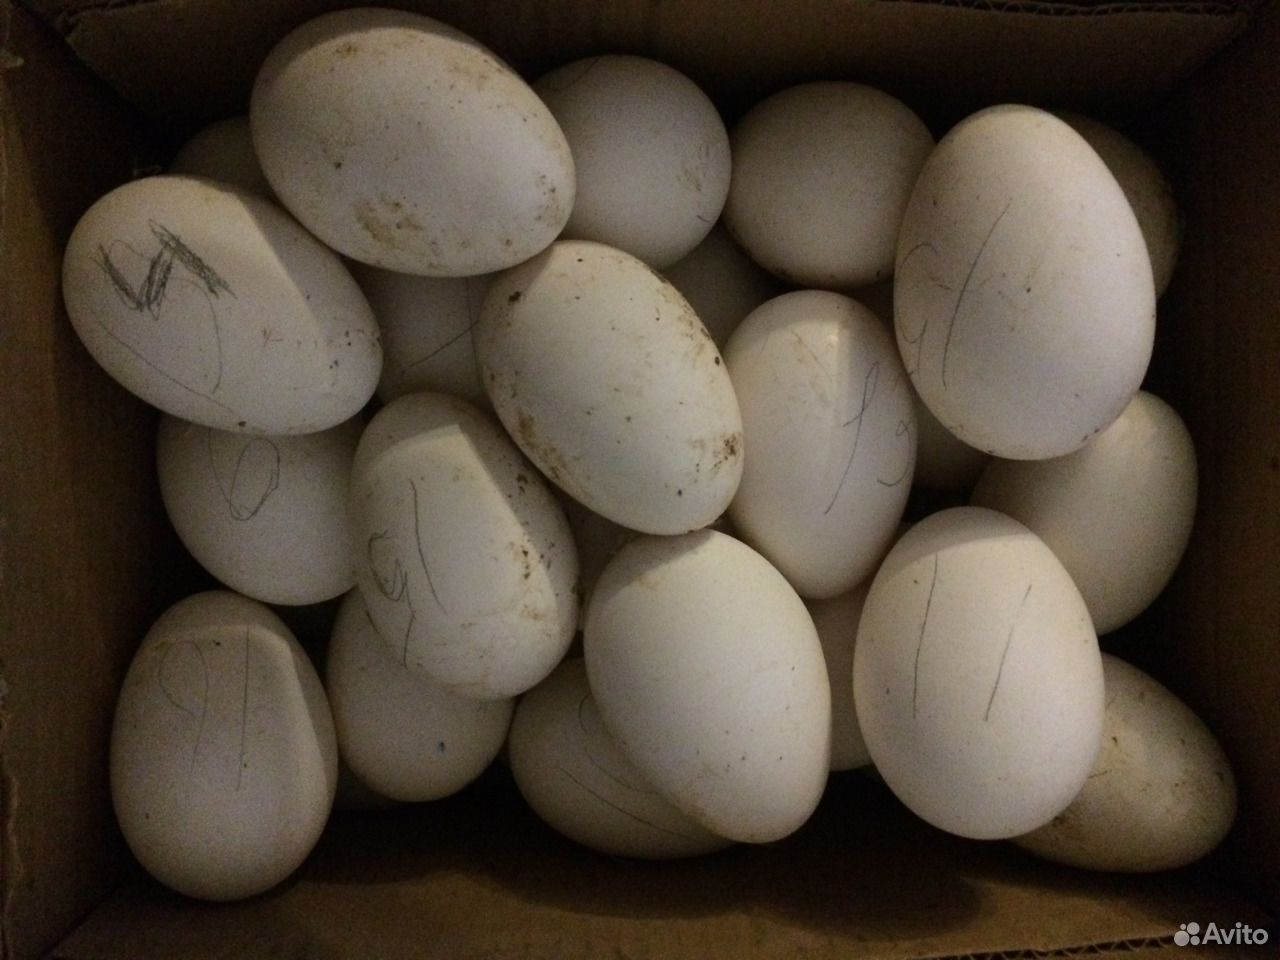 Яйцо инкубационное купить в белгородской области